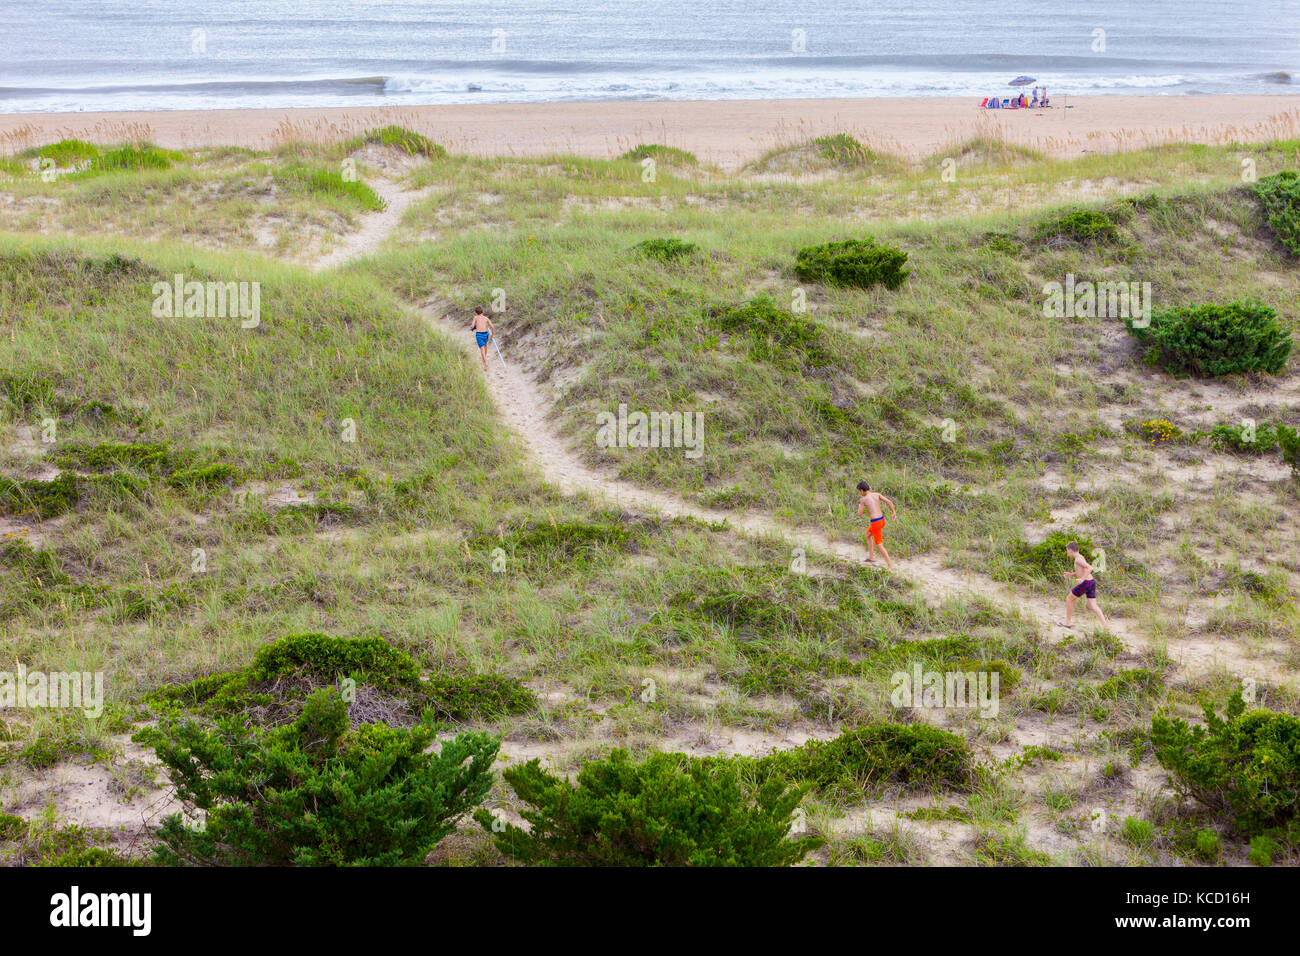 Avon, Outer Banks, Carolina del Norte, EE.UU. Los niños que van a lo largo de isla barrera dunas de camino a la playa del Atlántico. Foto de stock